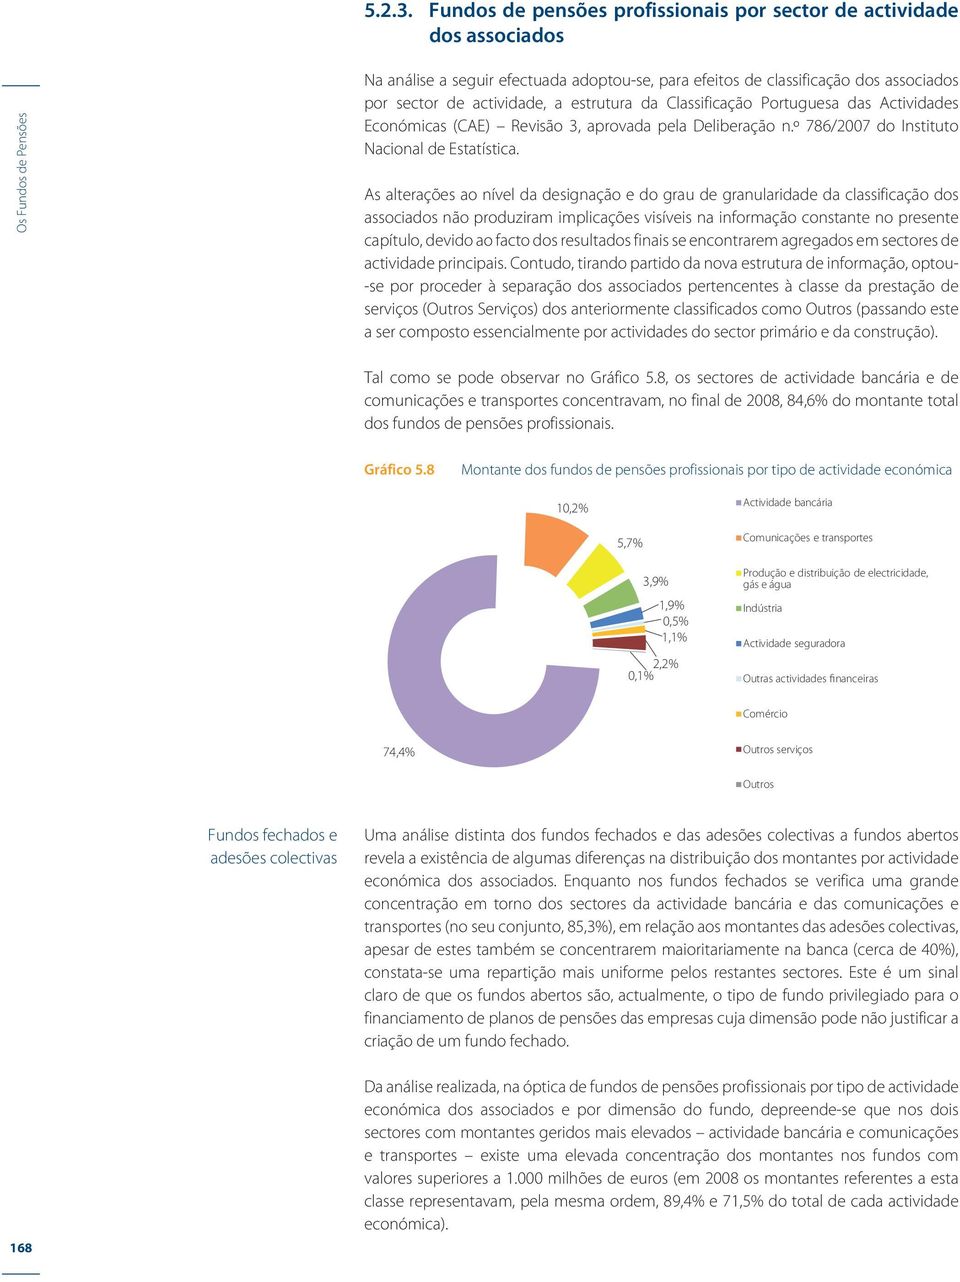 Classificação Portuguesa das Actividades Económicas (CAE) Revisão 3, aprovada pela Deliberação n.º 786/2007 do Instituto Nacional de Estatística.